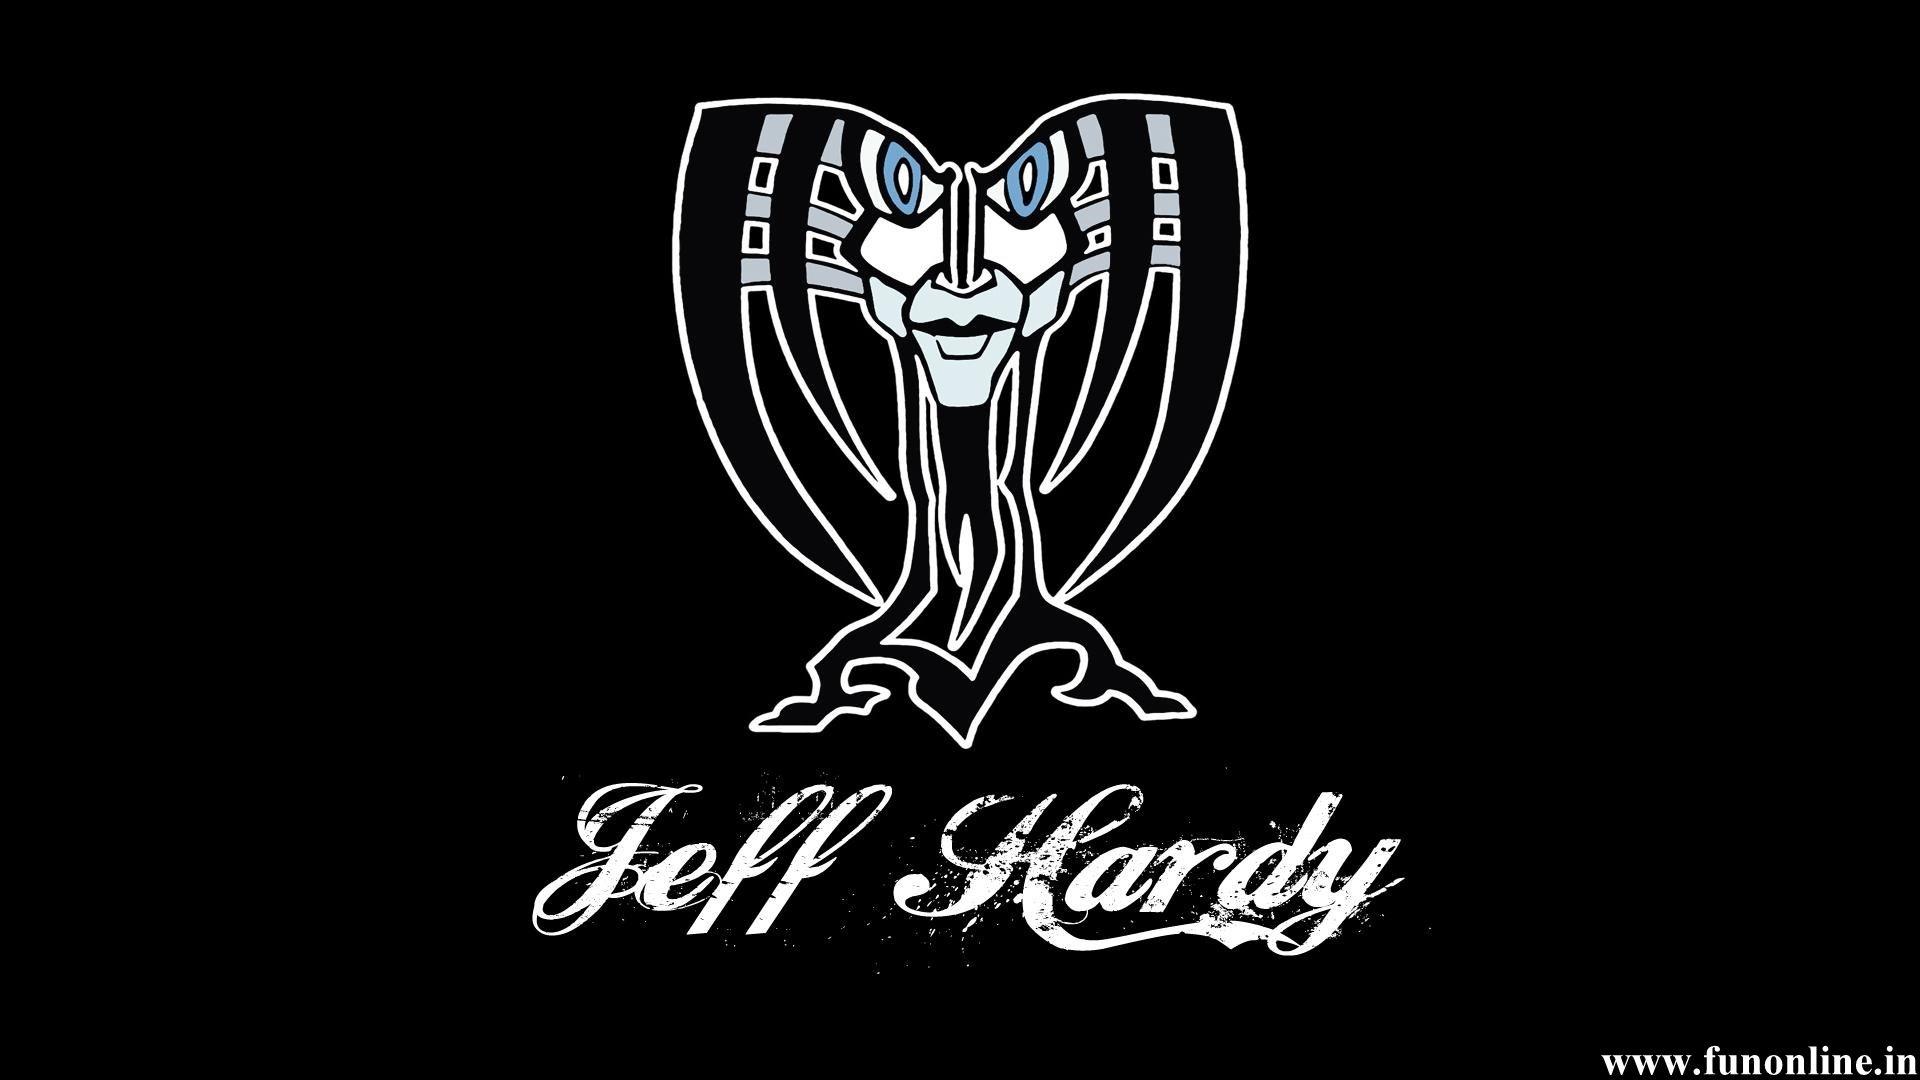 jeff hardy logo wallpaper